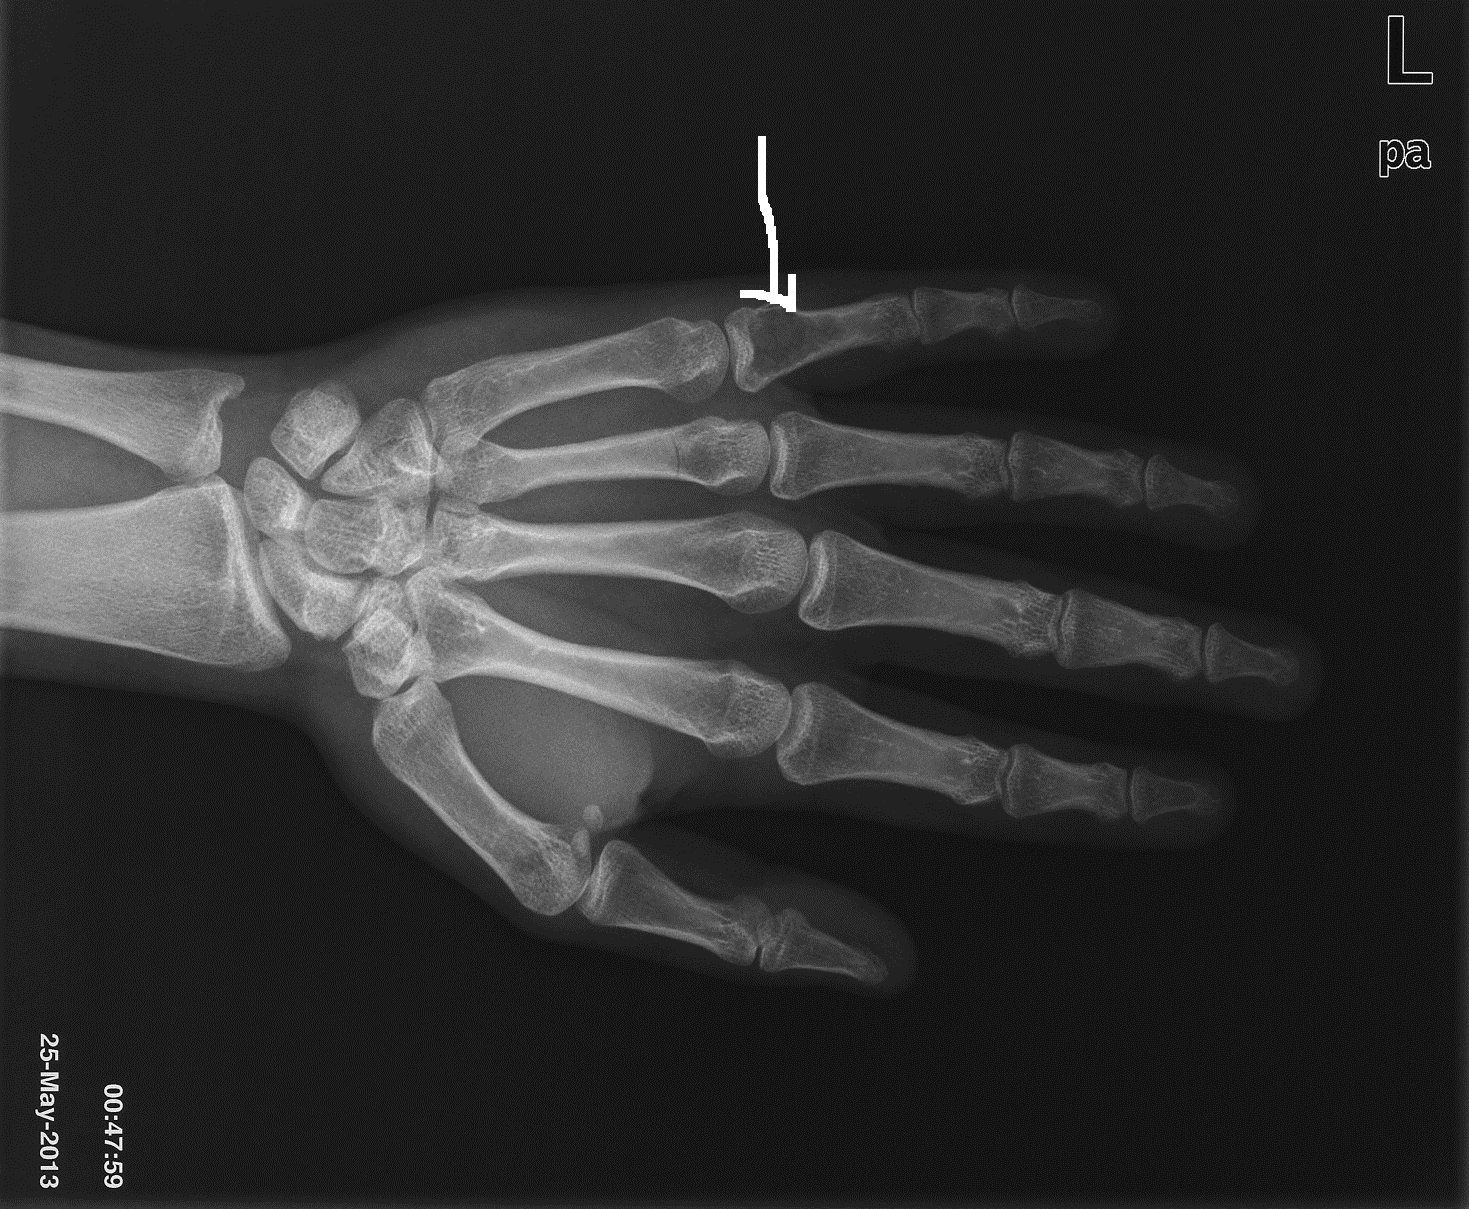 理学療法士 PhysiTheraResearch: 手の骨 Bones of hand：理学療法士による身体活動研究